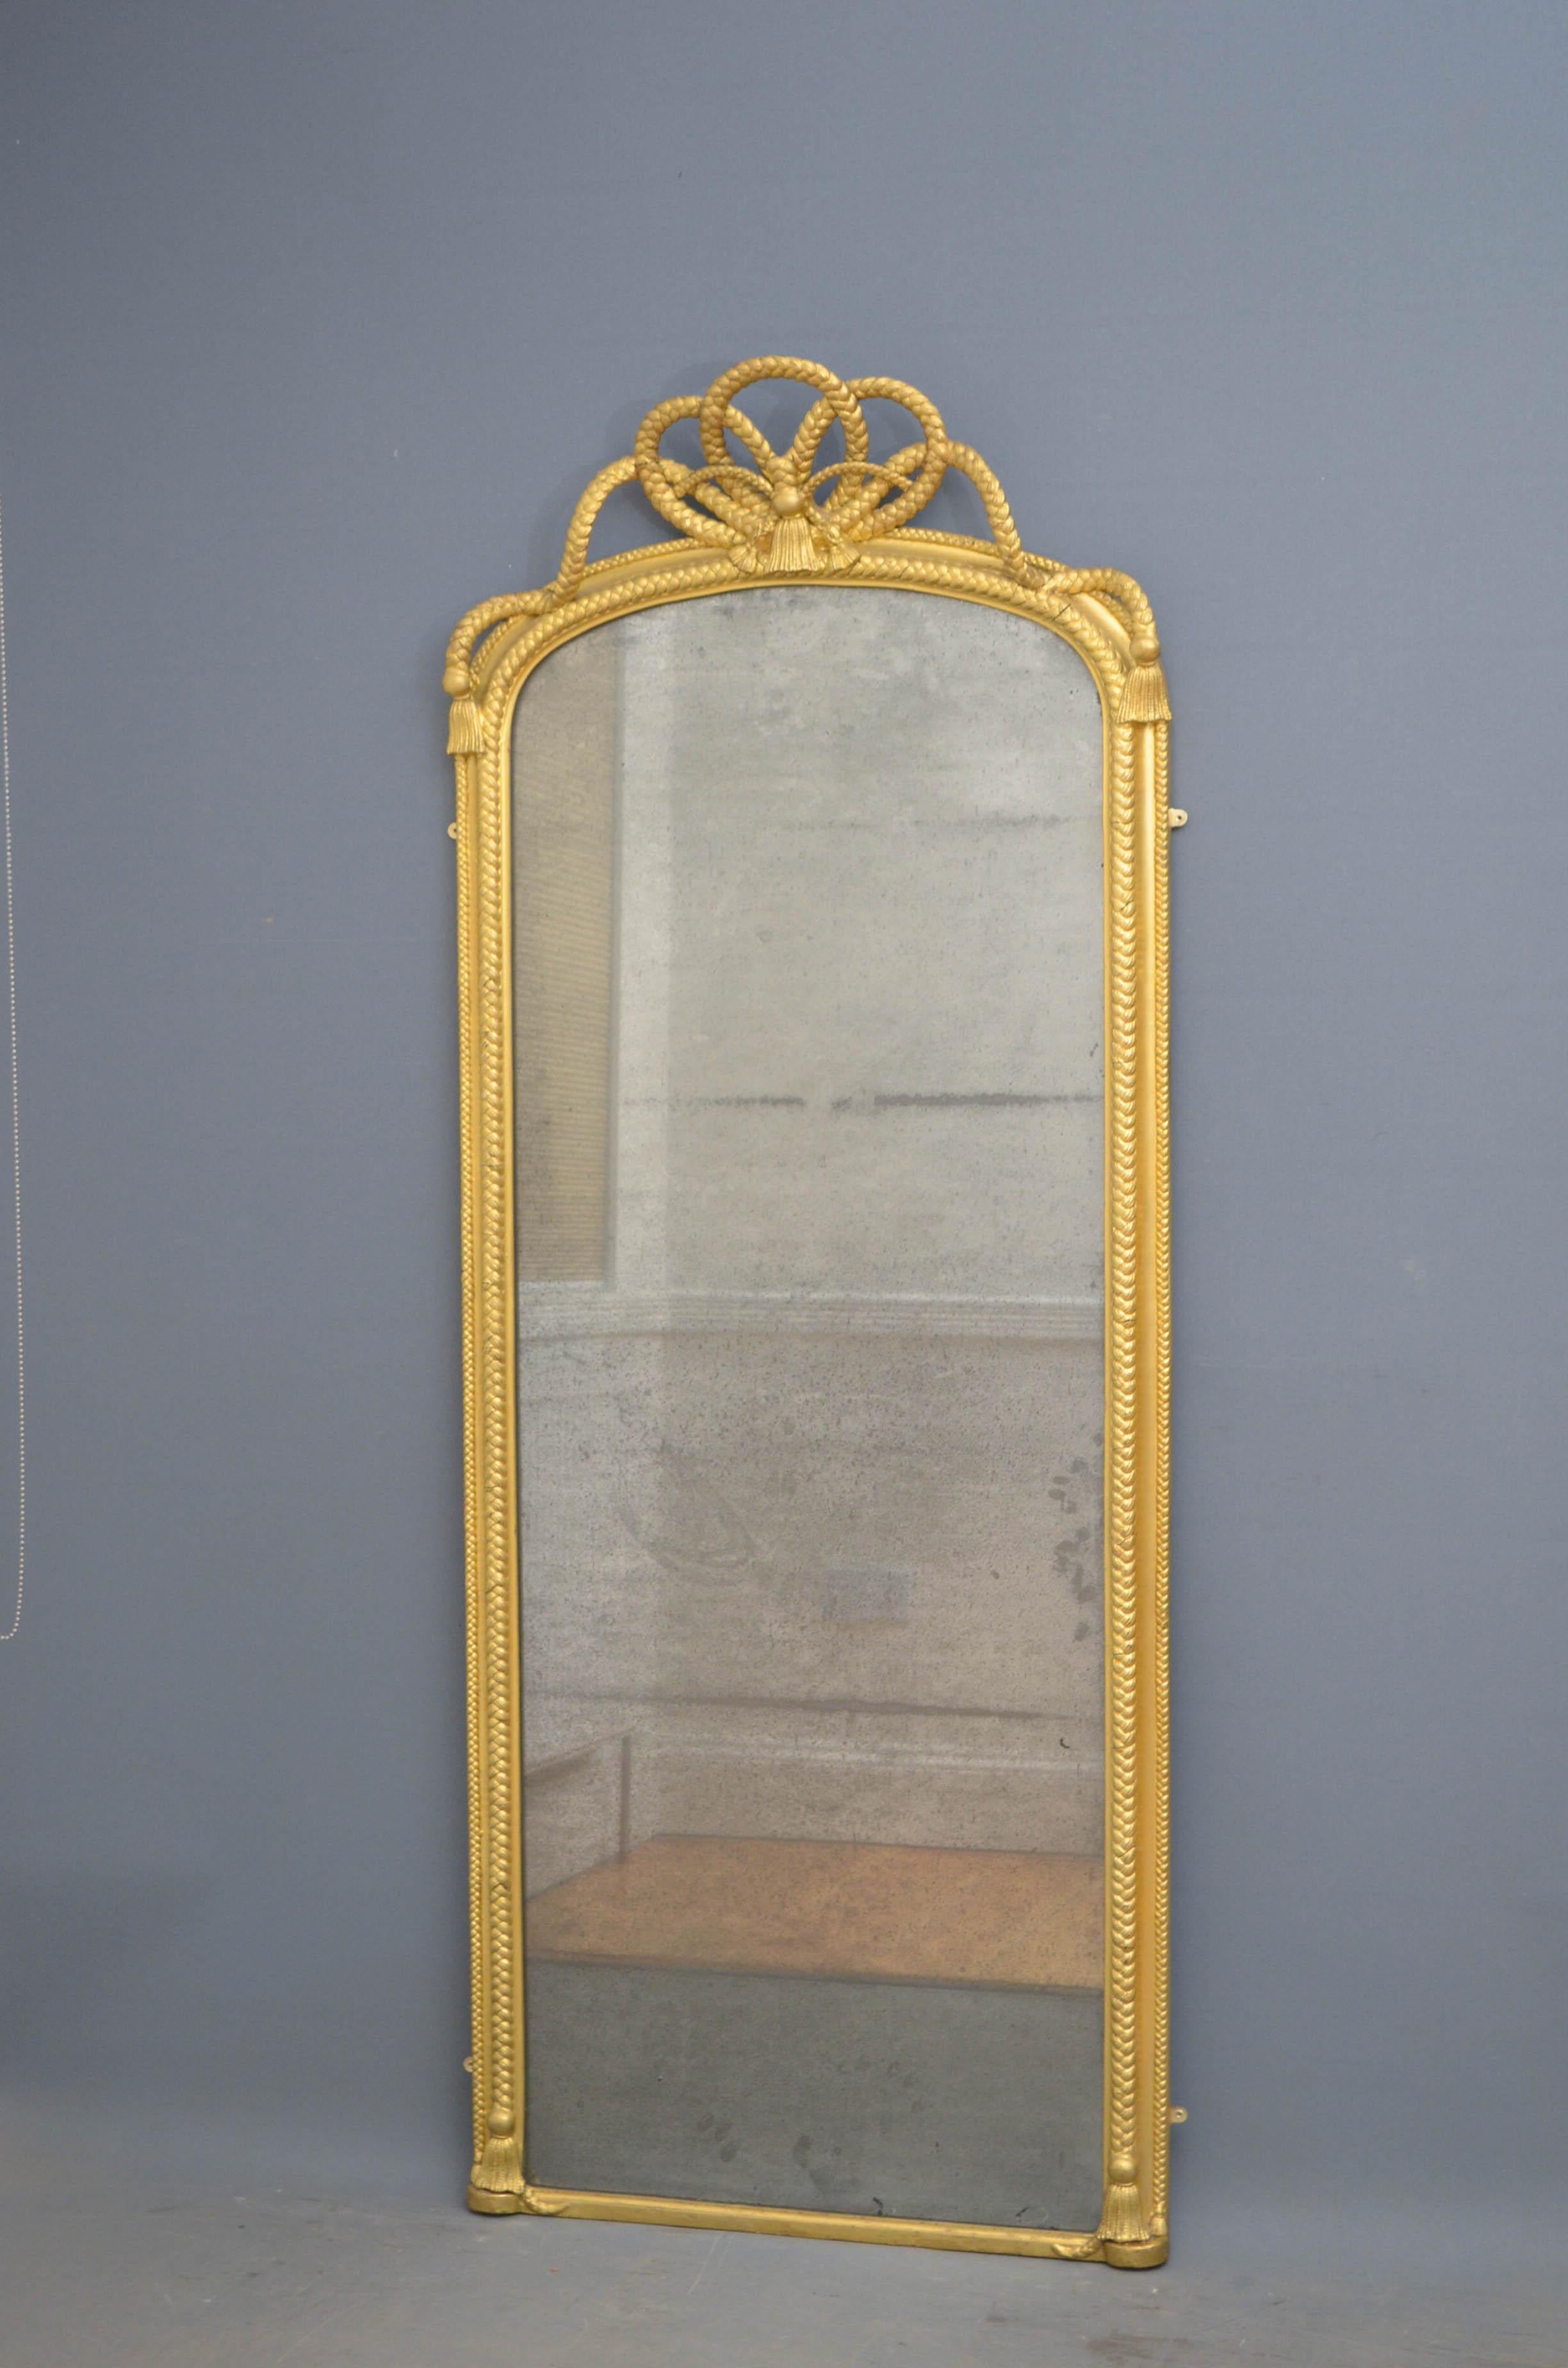 Sn4603, stilvoller viktorianischer Stand- oder Wandspiegel mit originalem, stark verschmutztem Glas in einem mit Seilen verzierten Rahmen mit großer Seilschleife oben und Quasten am Fuß. Dieser Spiegel wurde in der Vergangenheit nachgearbeitet und